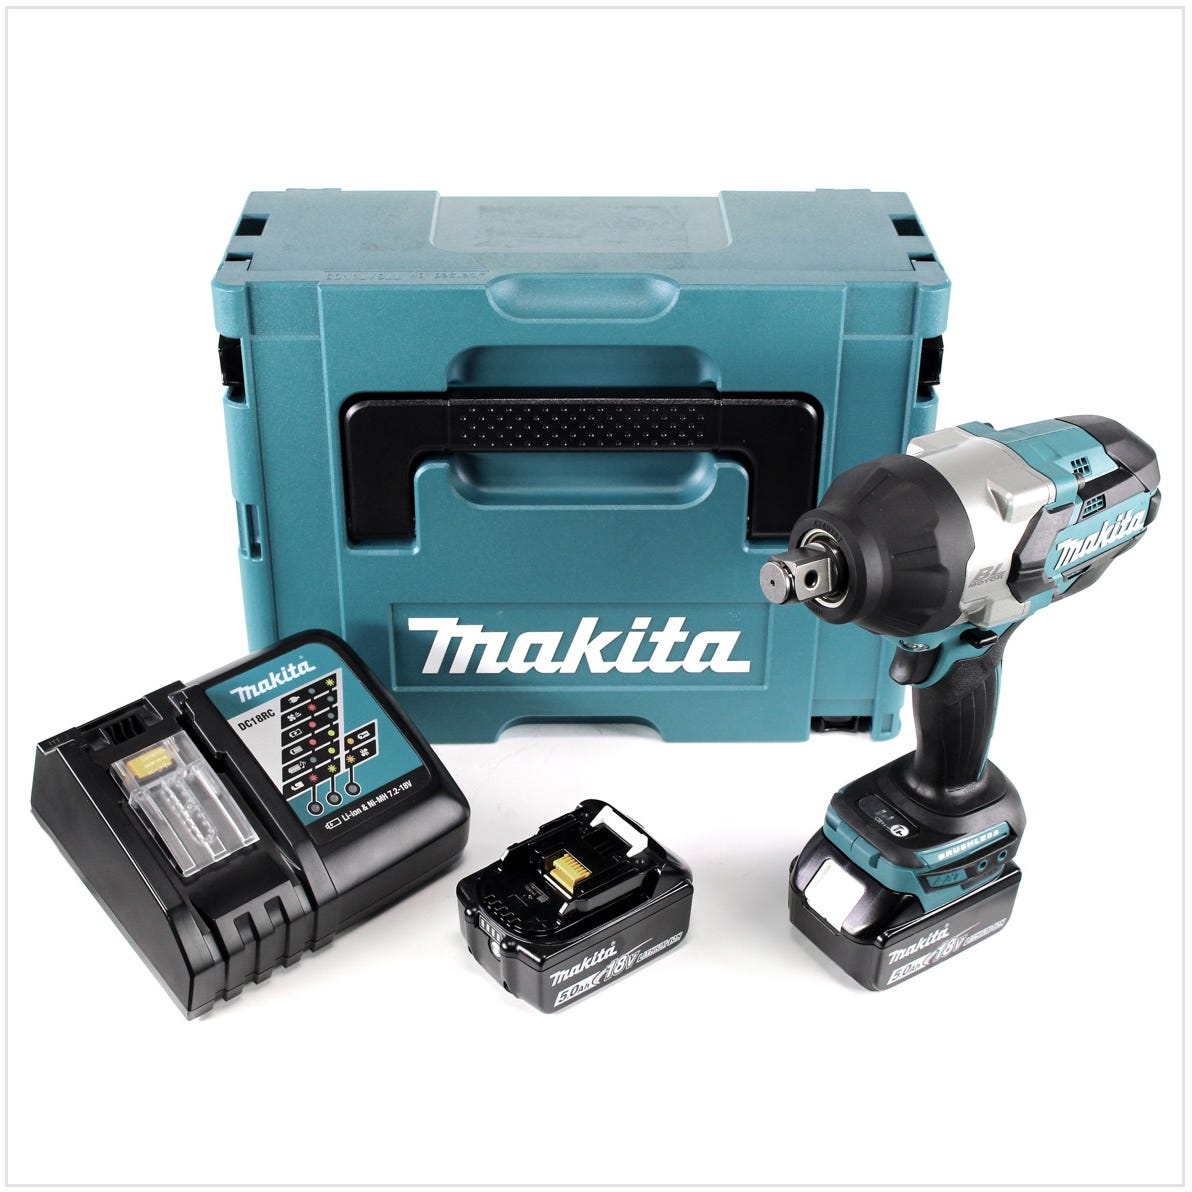 Makita DTW 1001 RTJ 18 V Li-Ion Brushless Boulonneuse à chocs sans fil avec Boîtier Makpac + 2x Batteries BL 1850 5,0 Ah + Chargeur rapide DC 18 RC 0